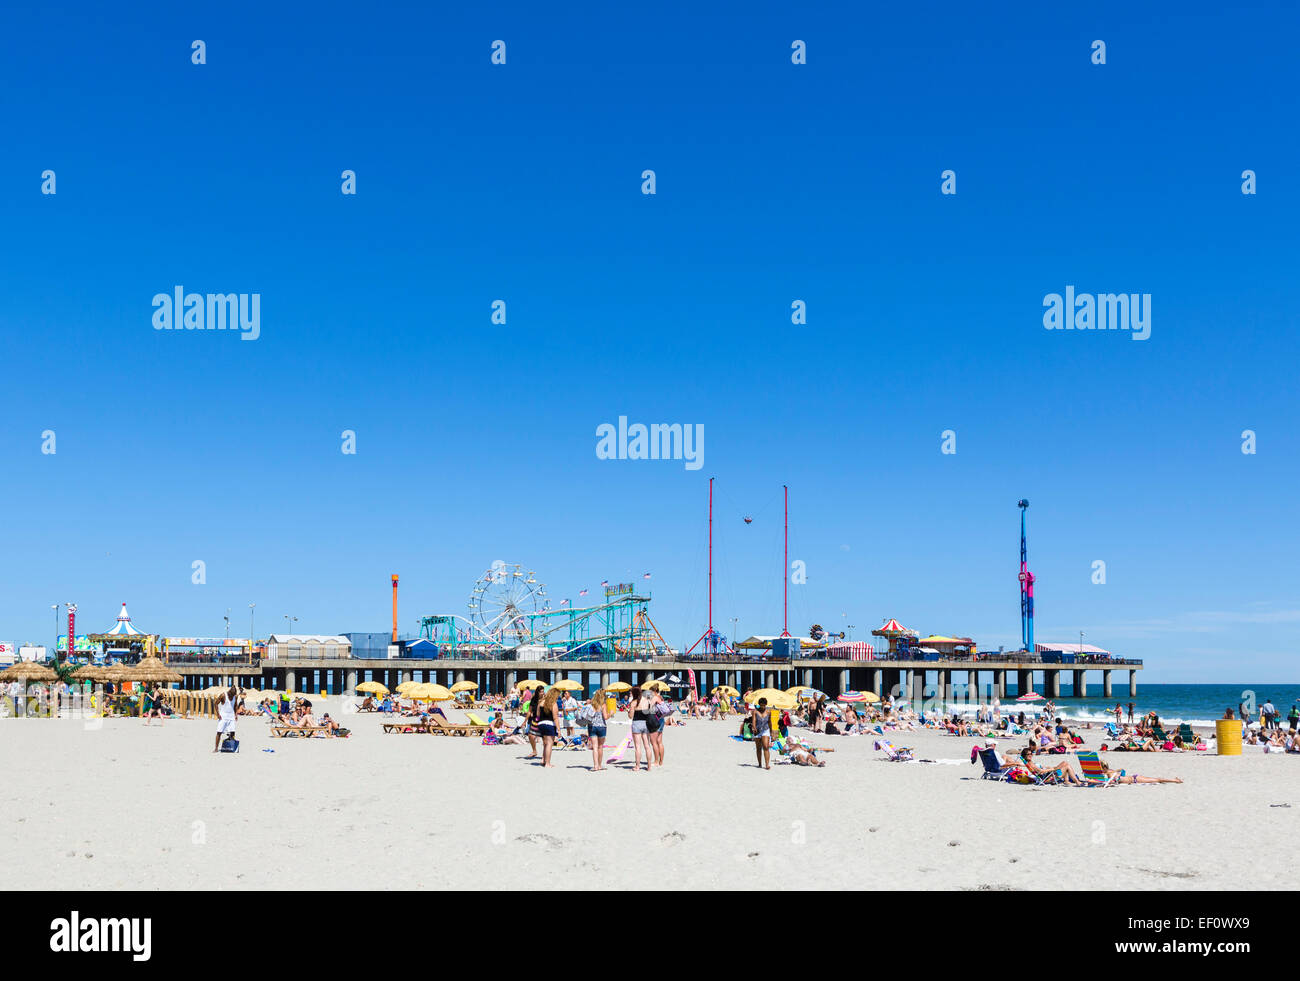 La spiaggia e il molo di acciaio, Atlantic City, New Jersey, STATI UNITI D'AMERICA Foto Stock